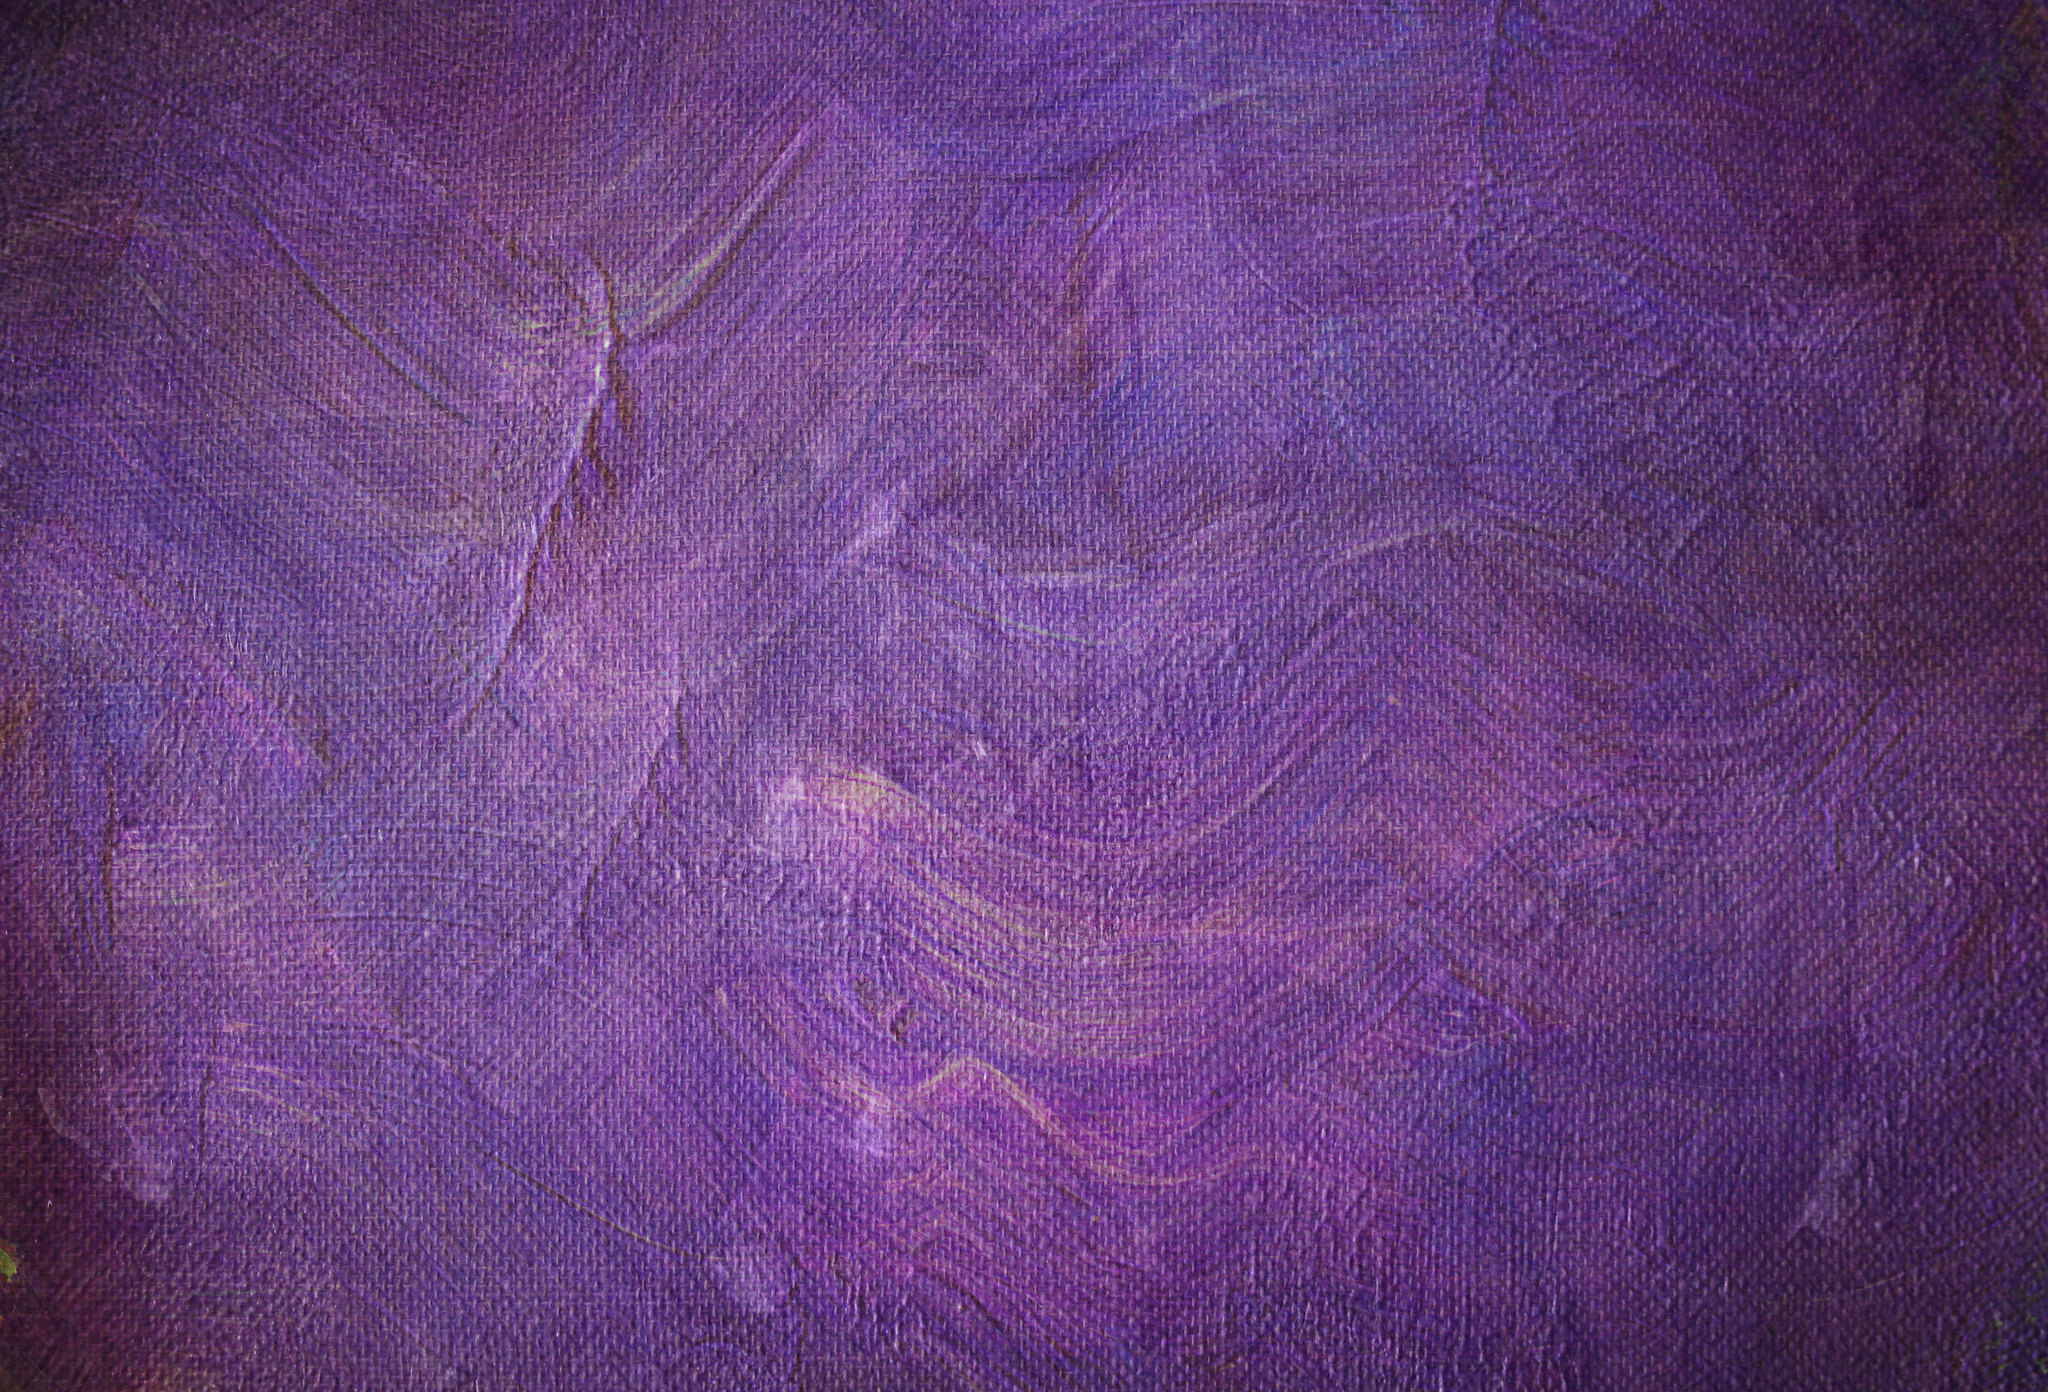 textures, purple, violet, texture, paint, canvas, smears, strokes, linen